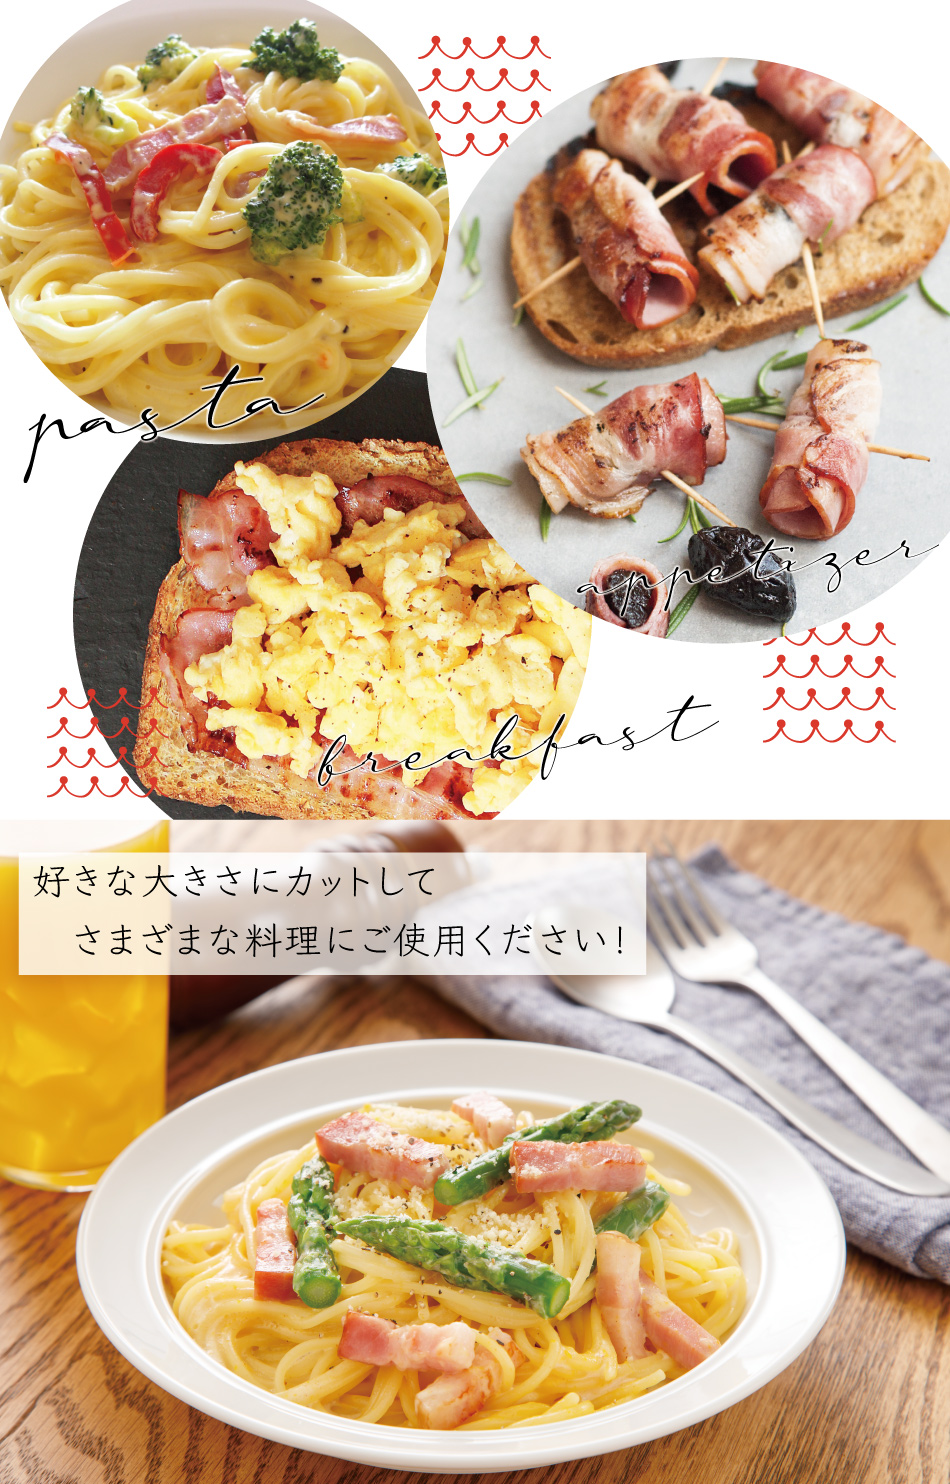 JAPAN X,ベーコン,大満足な300g,朝食に,BBQに,ステーキ,お酒のおつまみ,食卓の常備品に,常備品